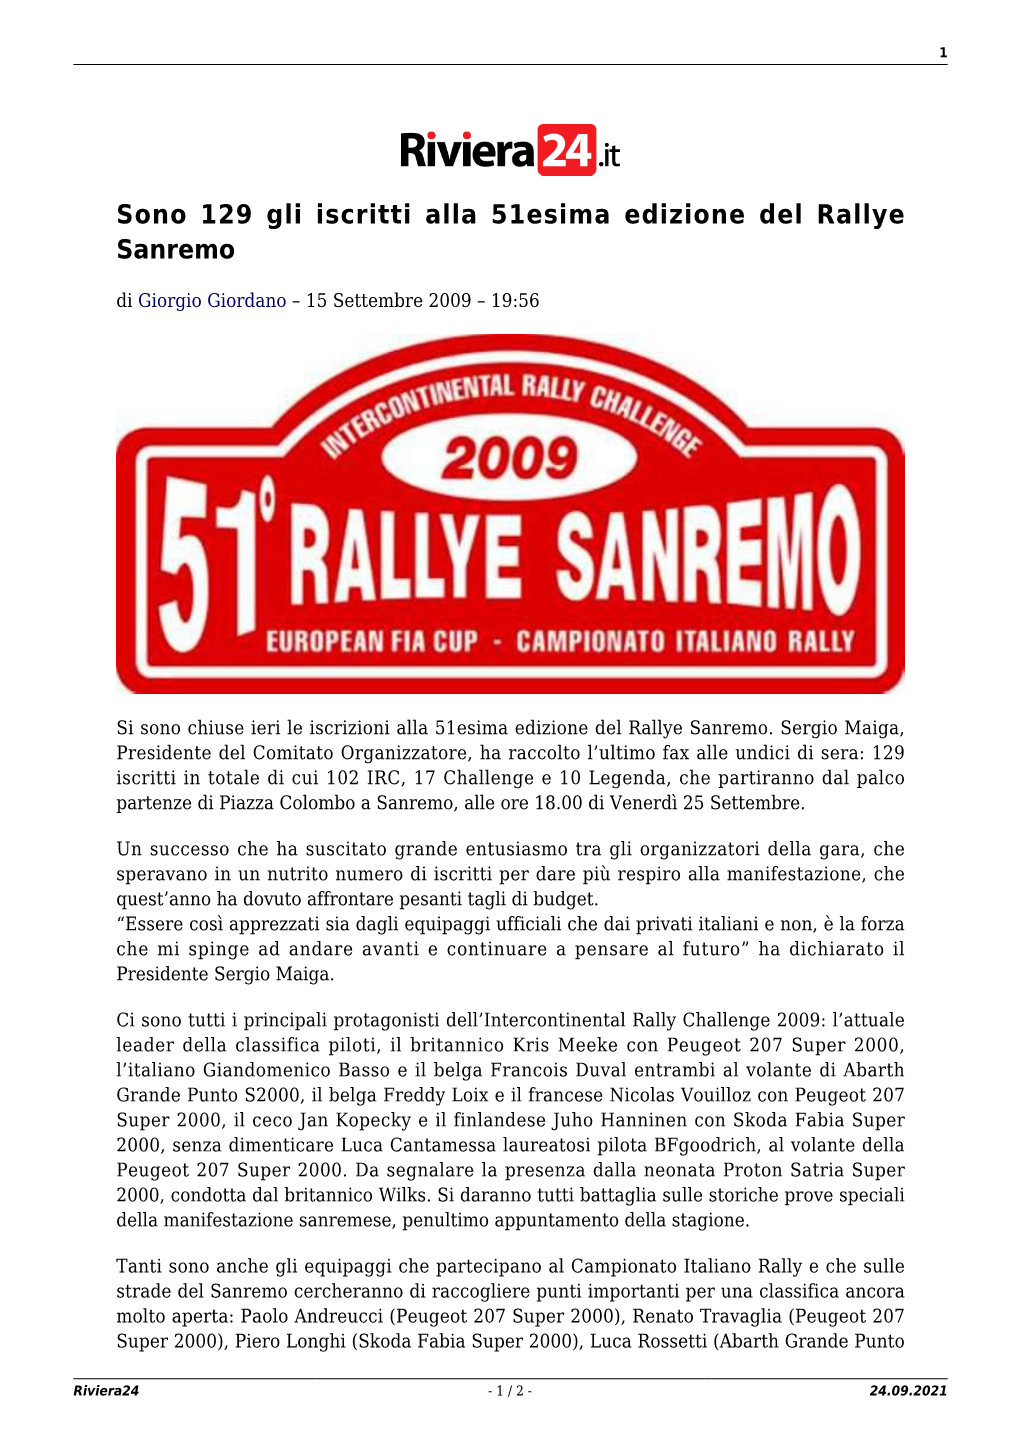 Sono 129 Gli Iscritti Alla 51Esima Edizione Del Rallye Sanremo